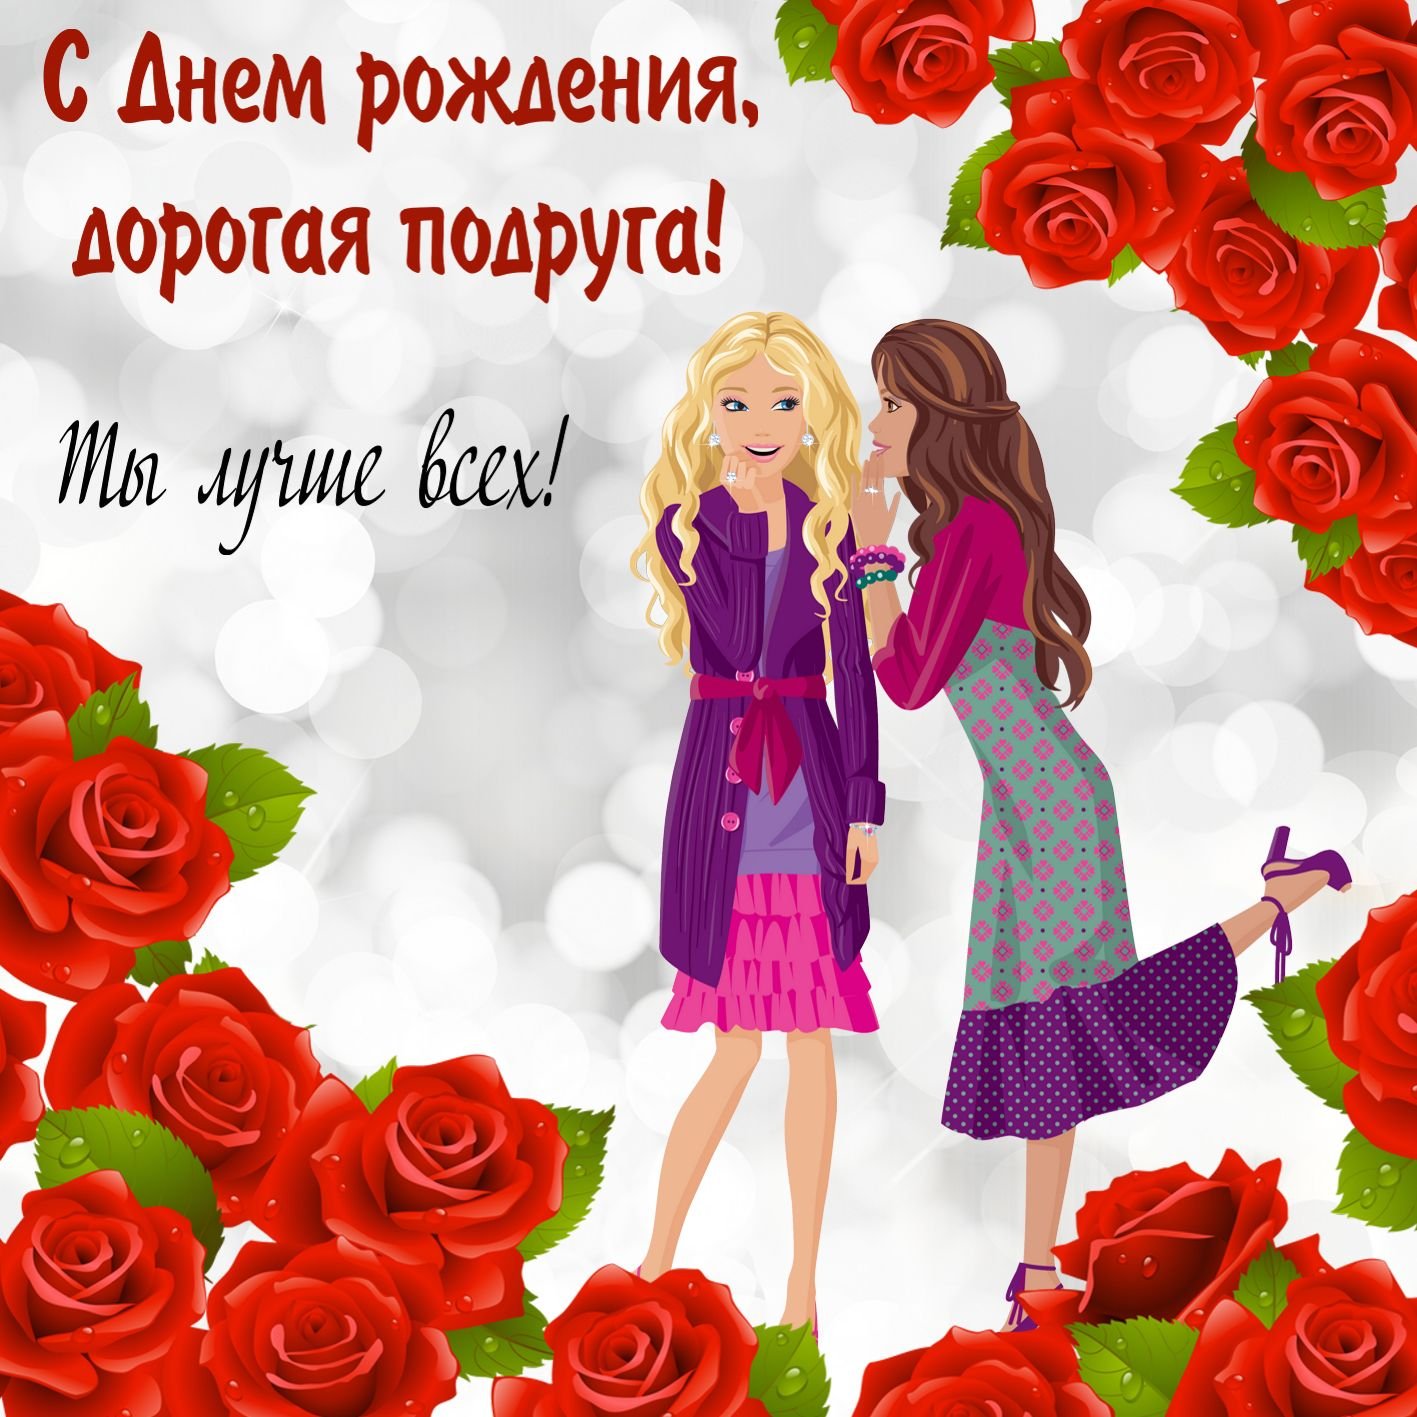 Поздравления Однокласснице Своими словами с днем рождения